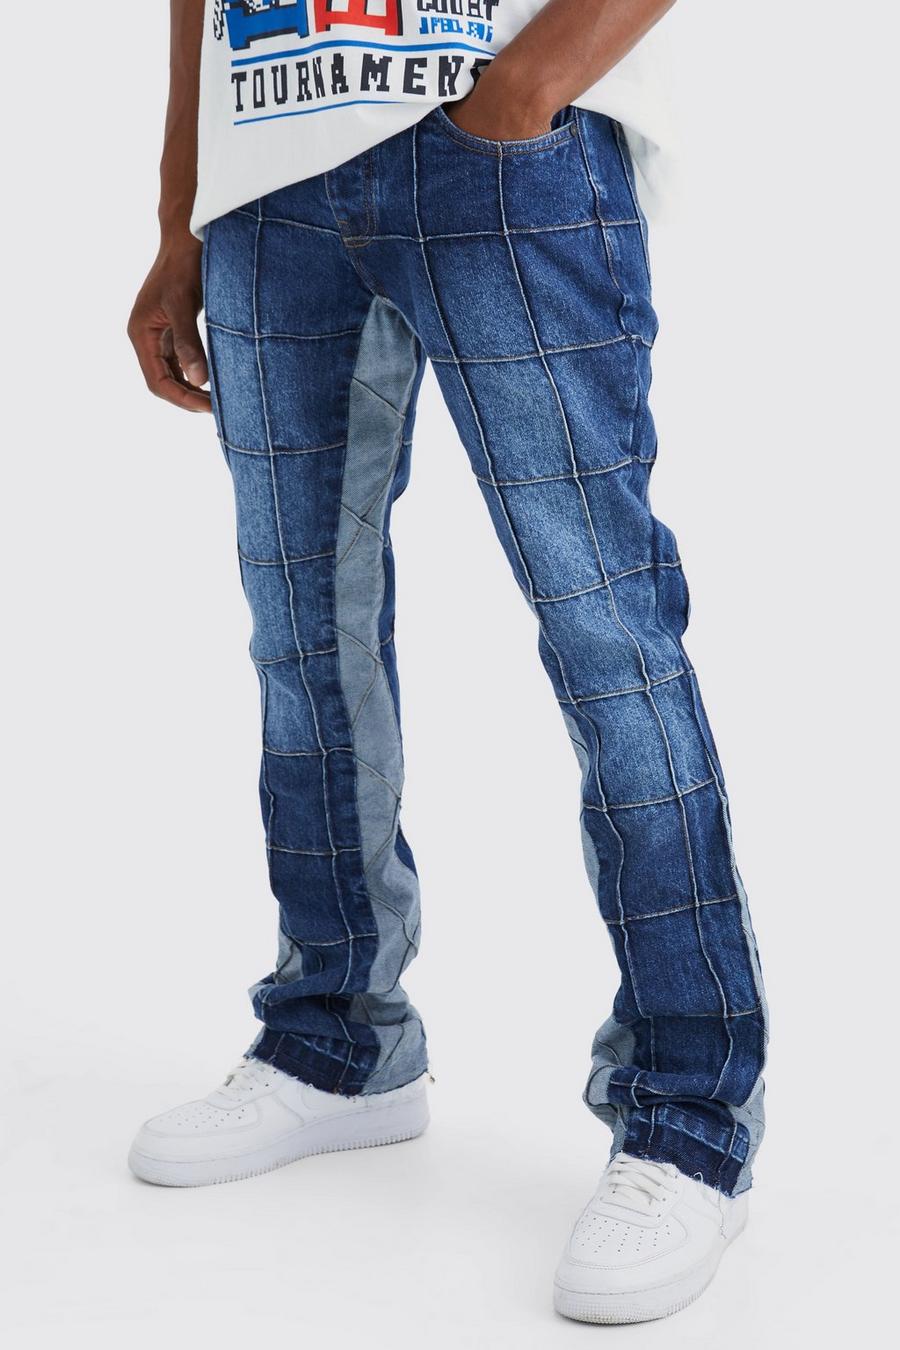 Jeans Slim Fit in denim rigido con pannelli a zampa e inserti, Vintage blue azul